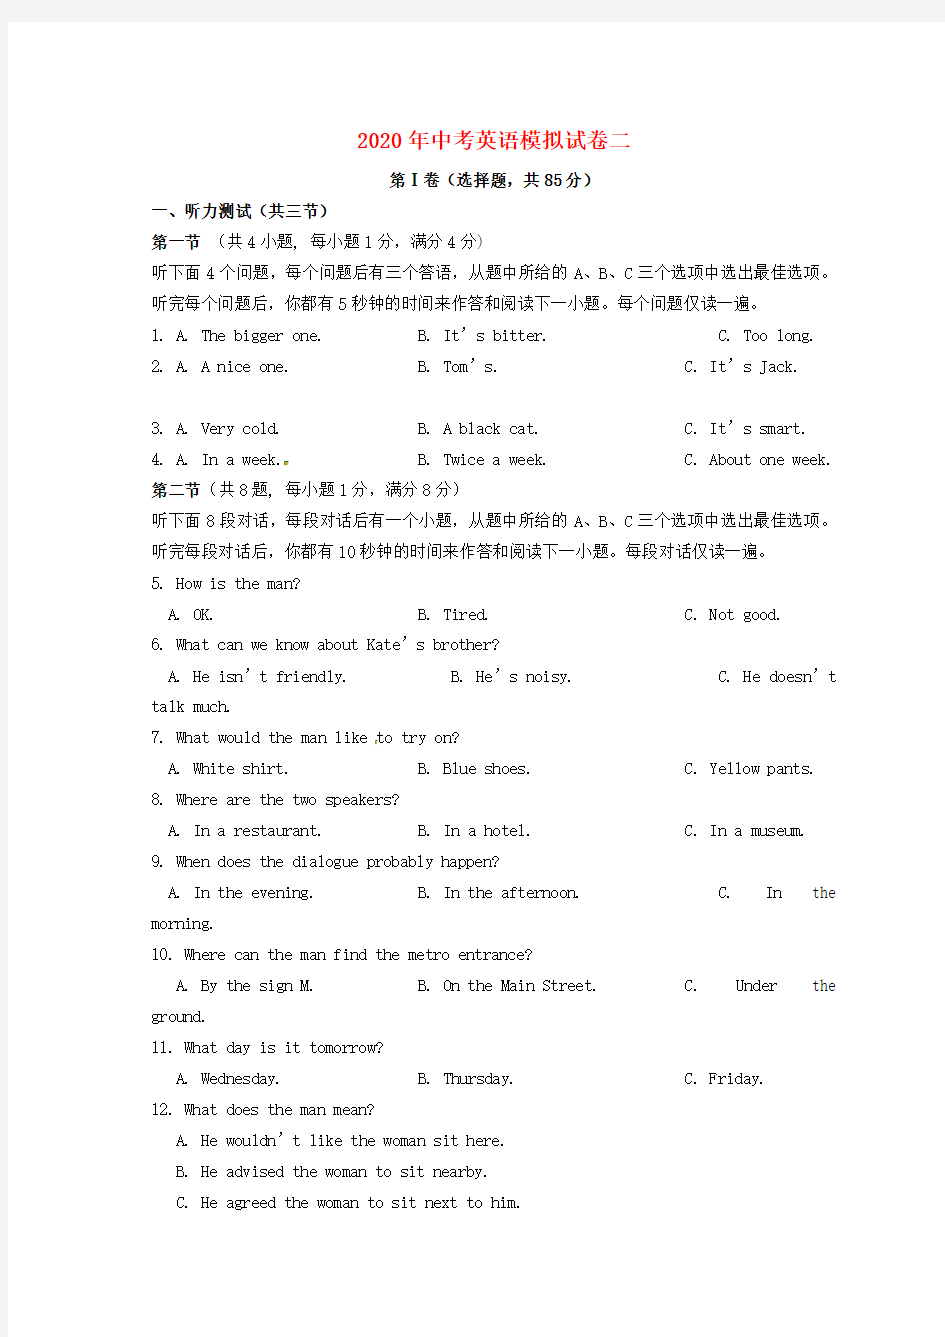 湖北省北大附中武汉为明实验学校2020年中考英语模式试题2(无答案)